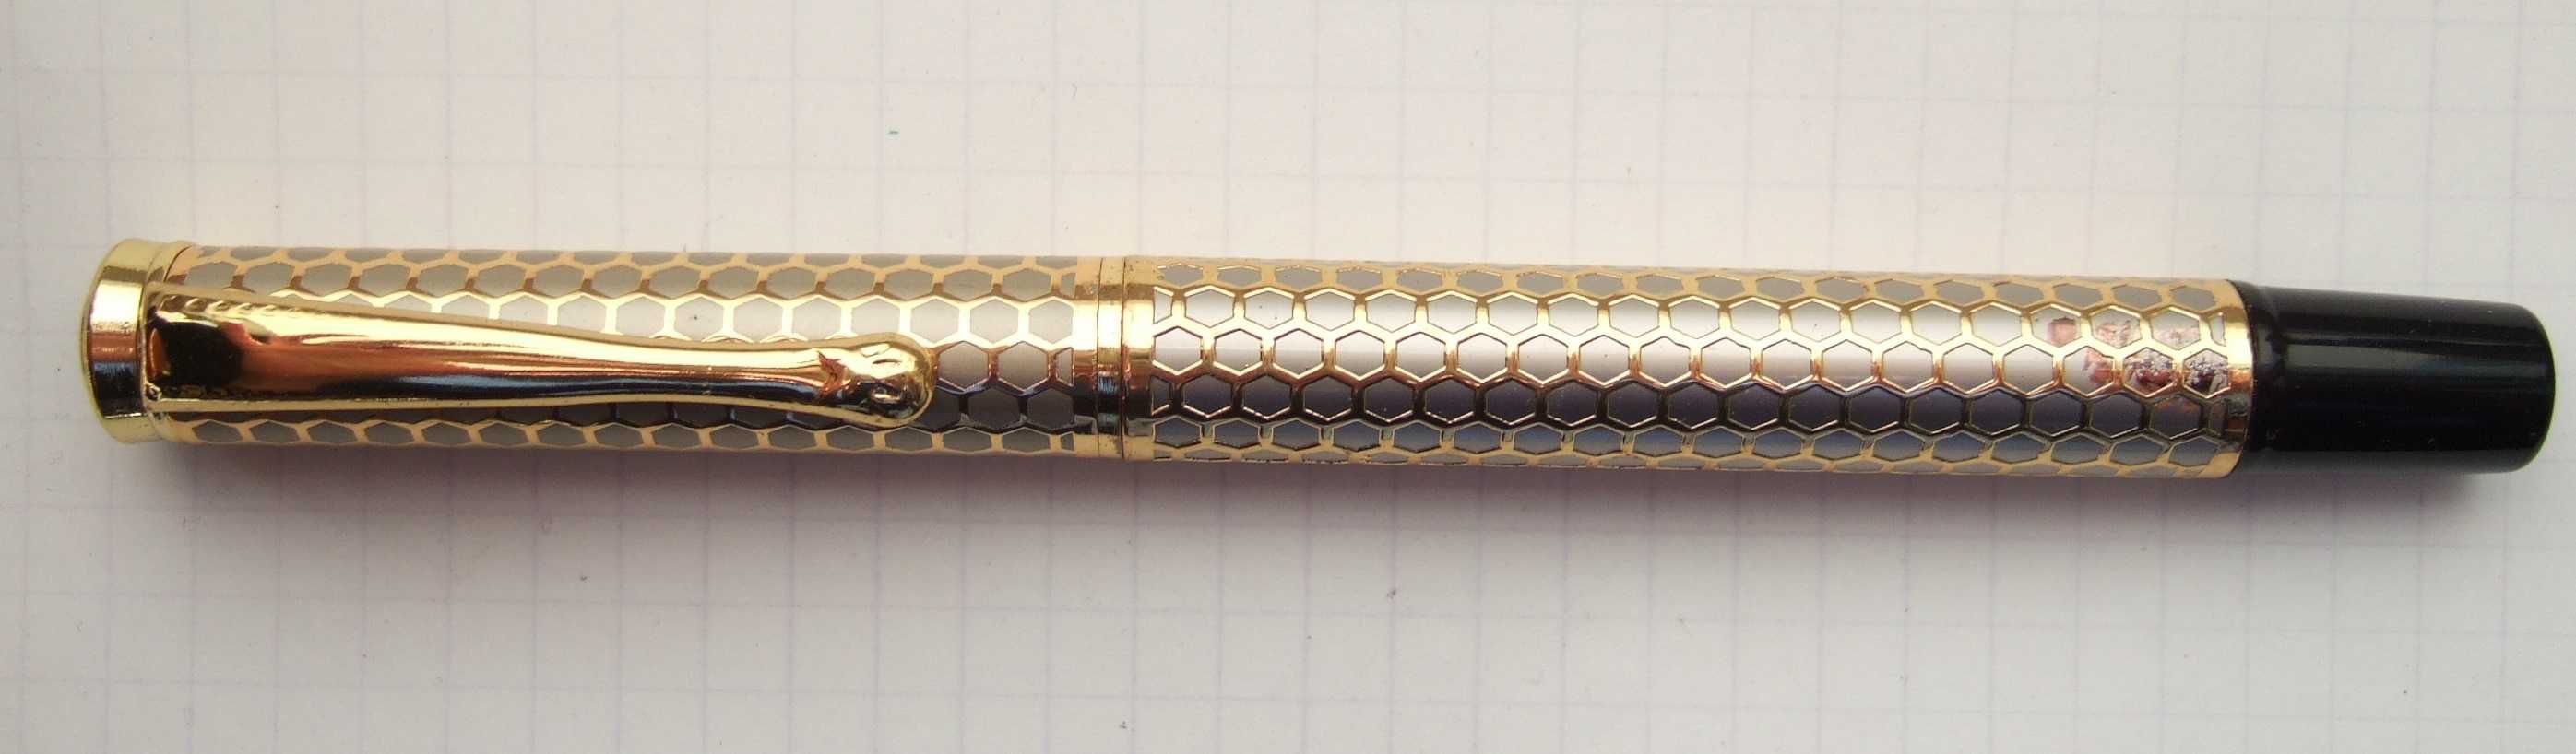 Перова ручка в металевому корпусі з оздобленням позолотою